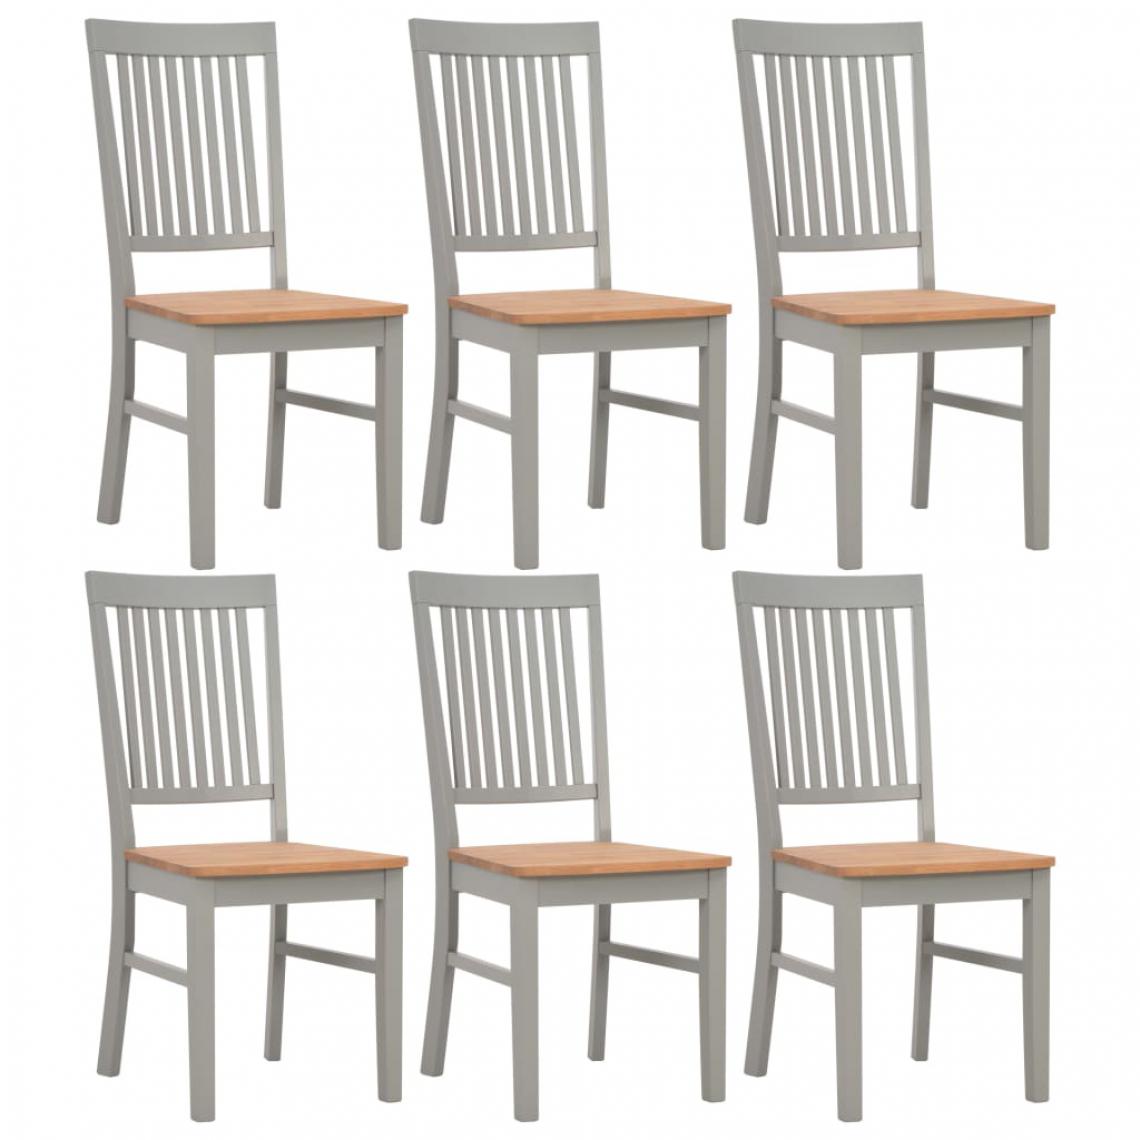 Icaverne - Joli Fauteuils et chaises categorie Abuja Chaises de salle à manger 6 pcs Gris Bois de chêne solide - Chaises